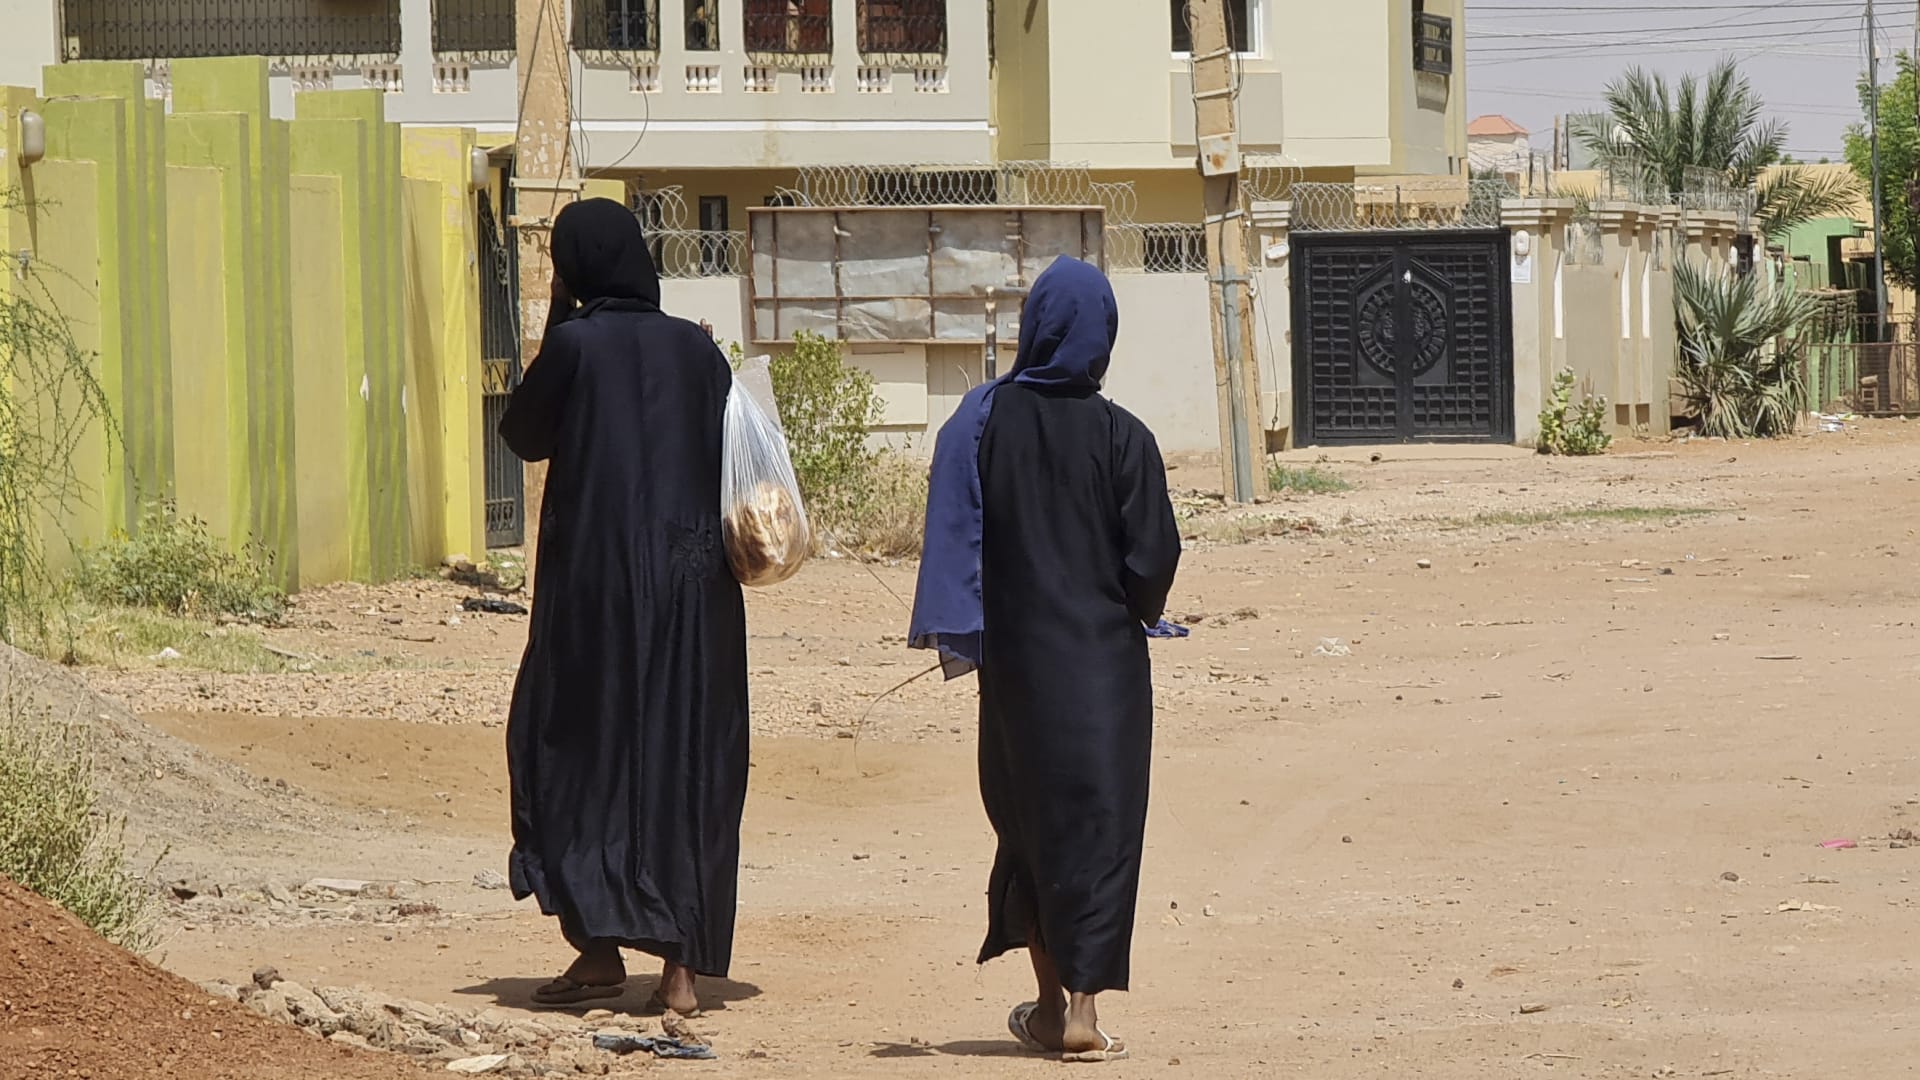 مزاعم بالاغتصاب والعبودية الجنسية.. تقرير لـ"آمنستي" يشير إلى ارتكاب جرائم حرب واسعة الانتشار في السودان